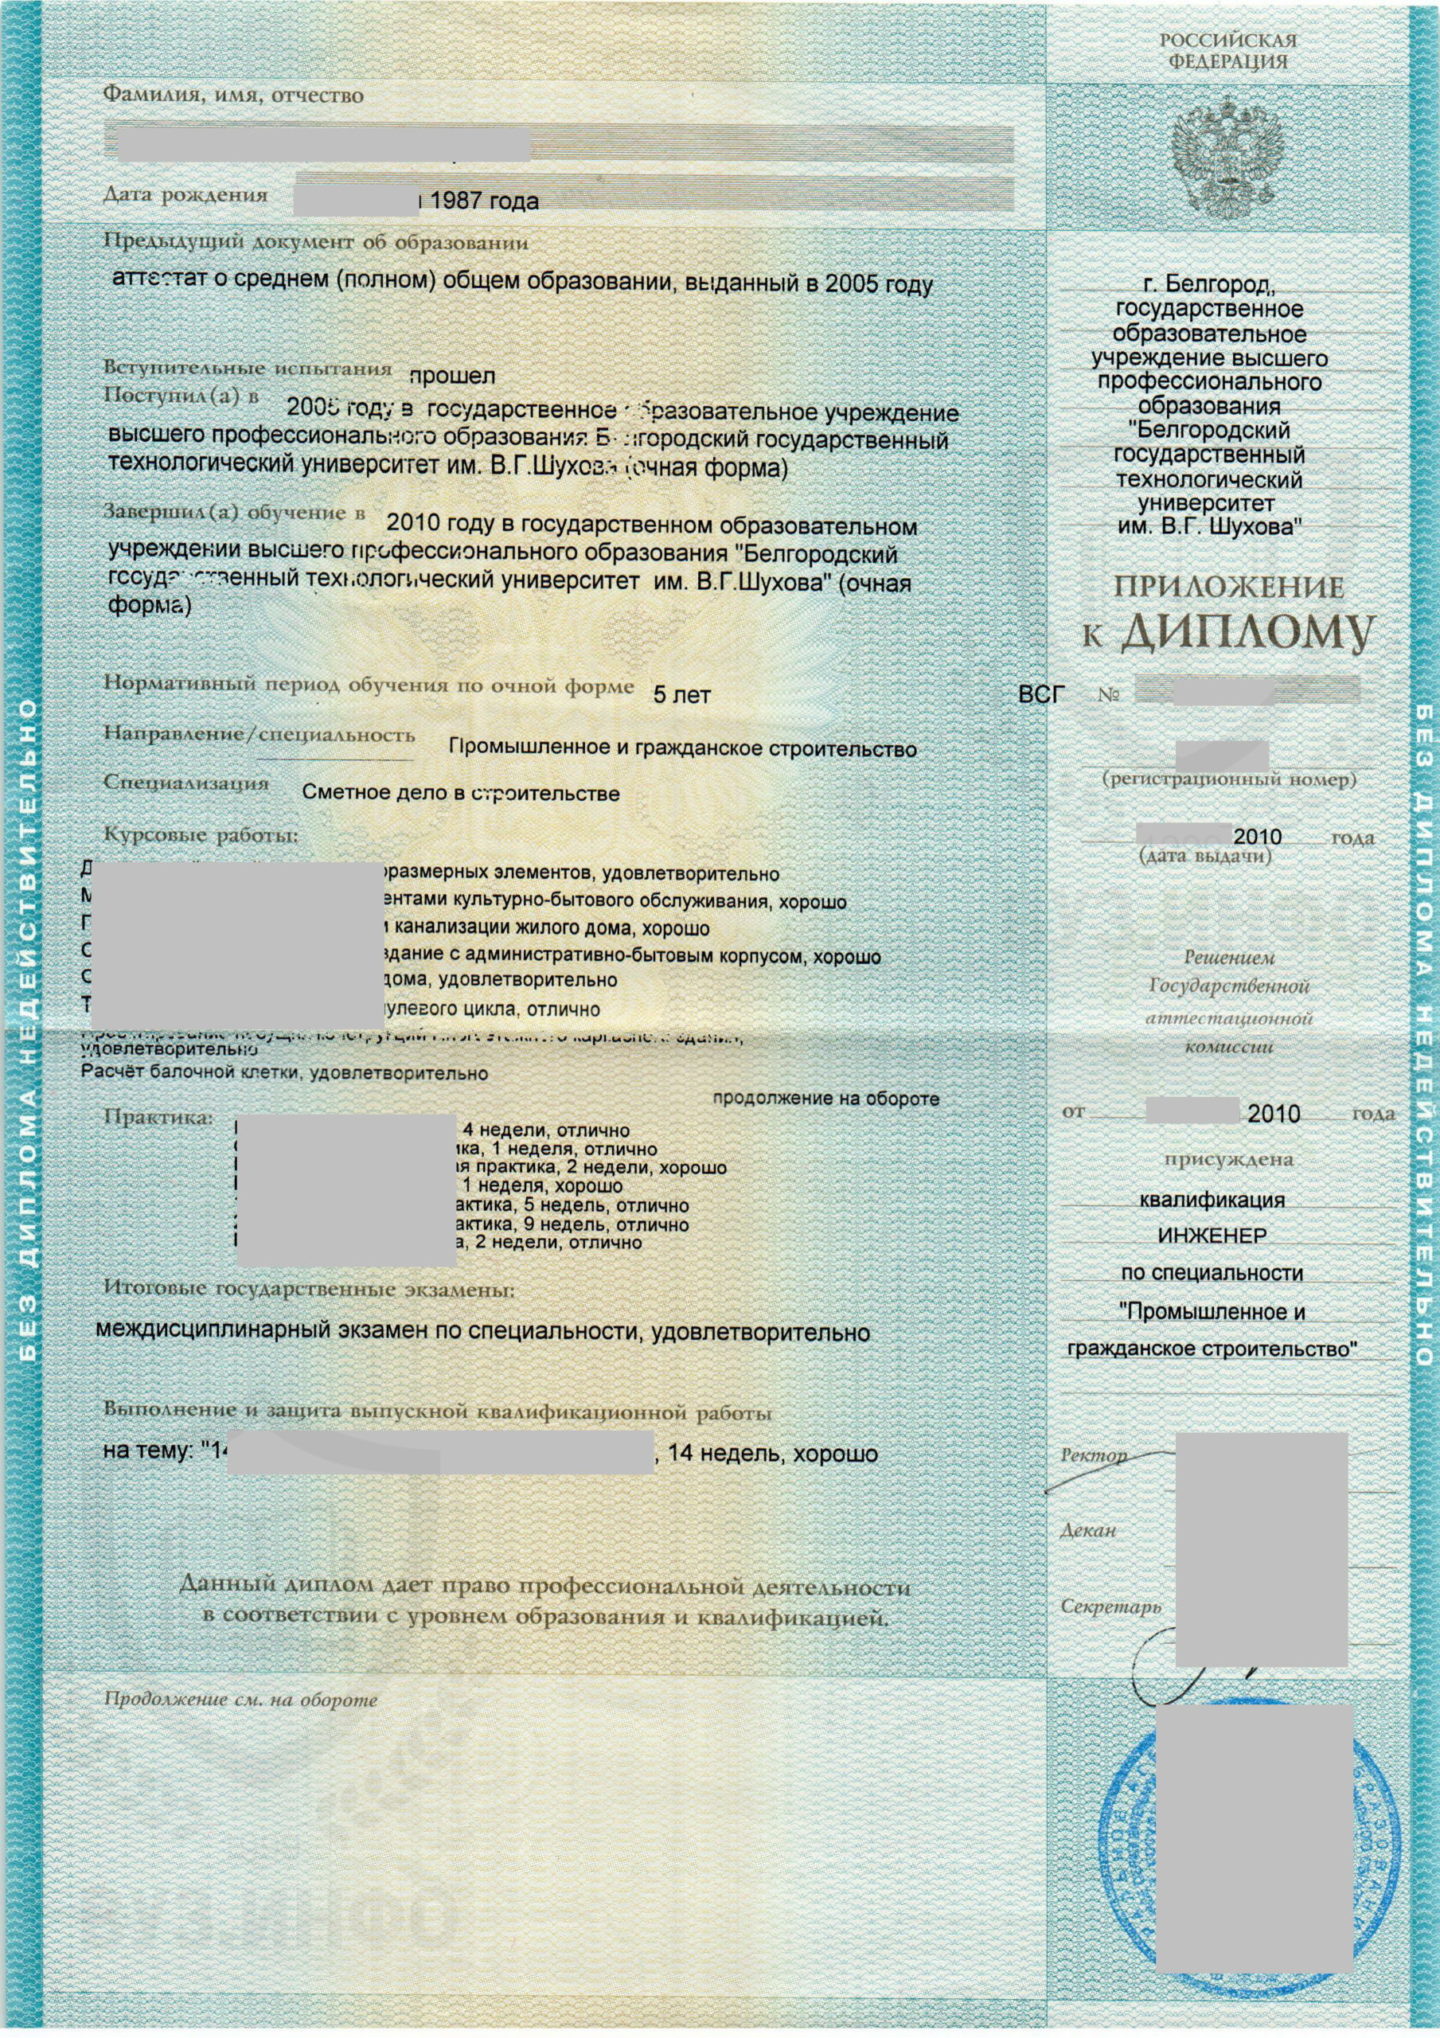 Приложение диплома 2010 года БГТУ им. В. Г. Шухова